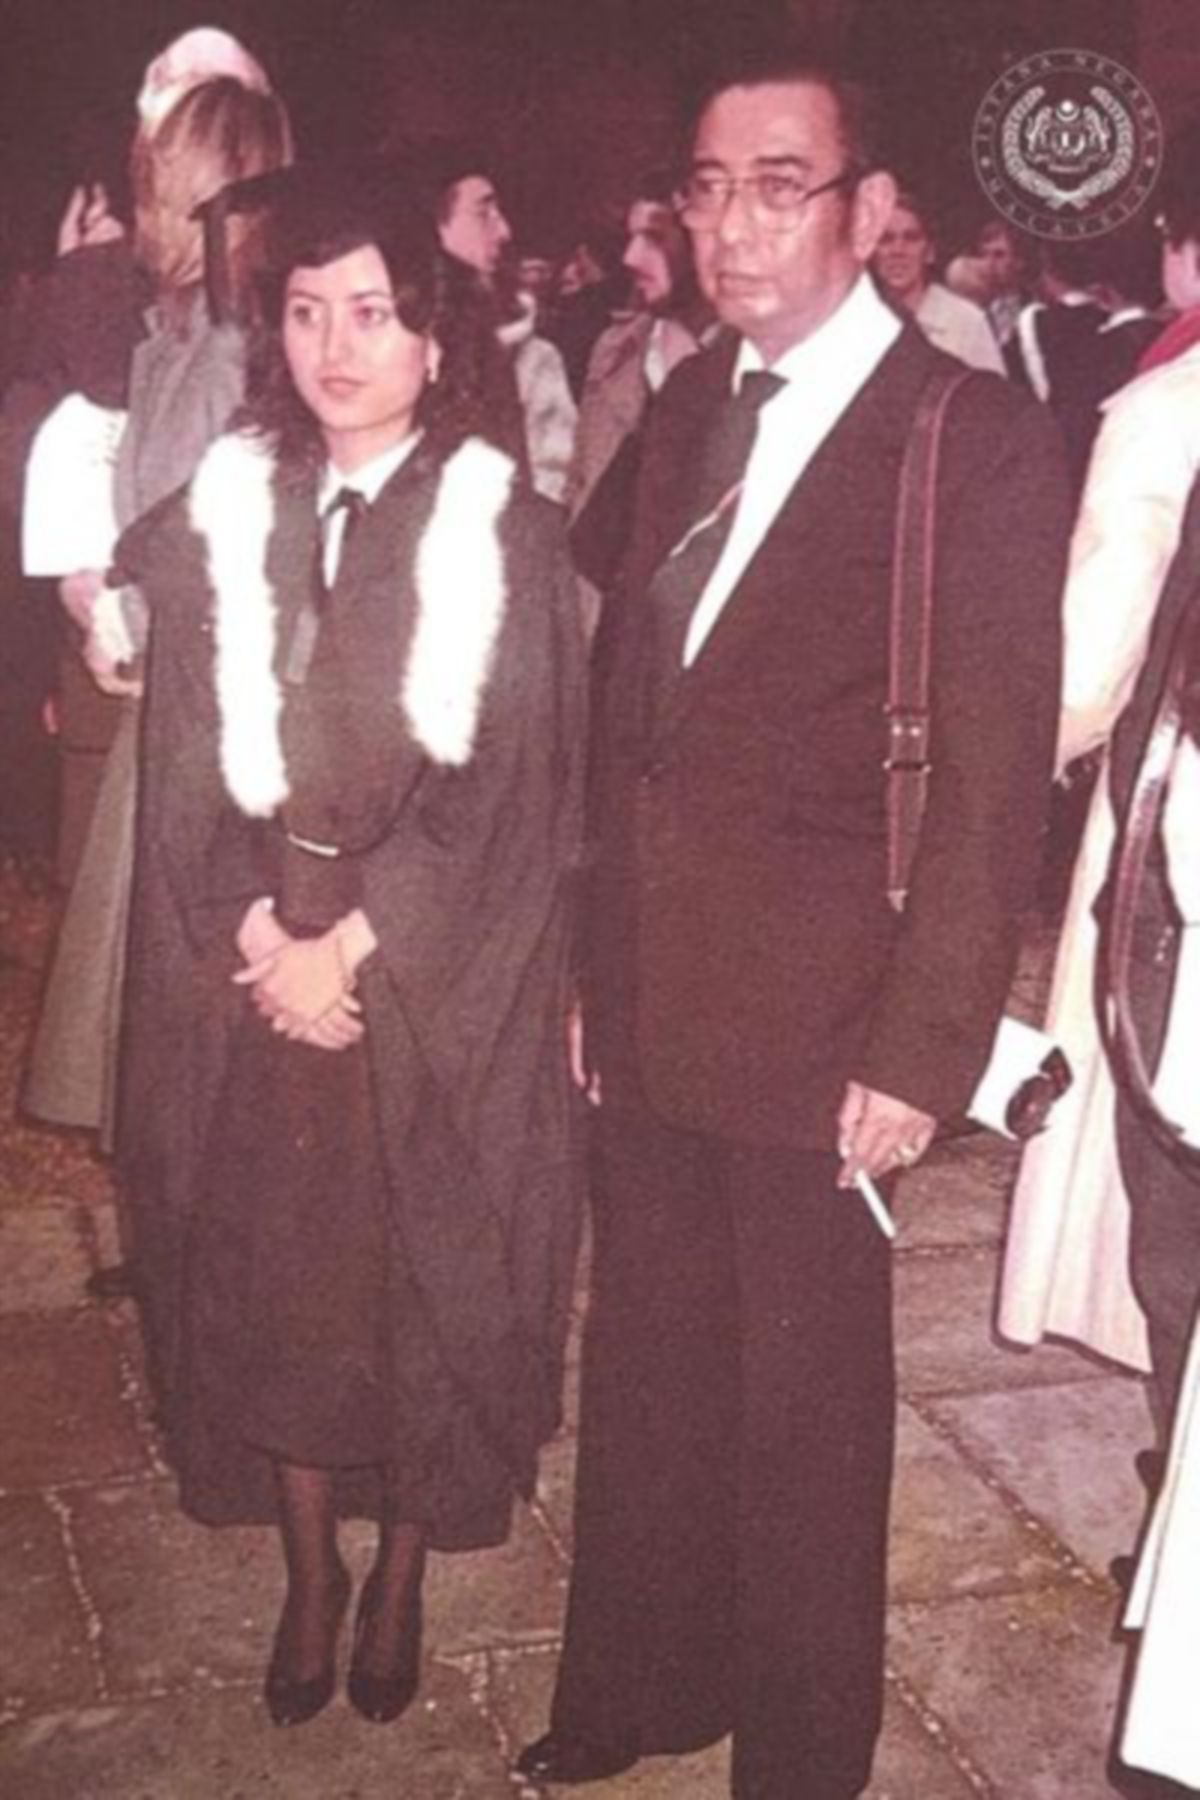 RAJA Permaisuri Agong bersama Almarhum Sultan Idris Shah II ketika menerima ijazah pada majlis graduasi di Universiti Oxford. Ia kali terakhir Seri Paduka Baginda bertemu Almarhum Ayahanda Baginda. Foto Istana Negara